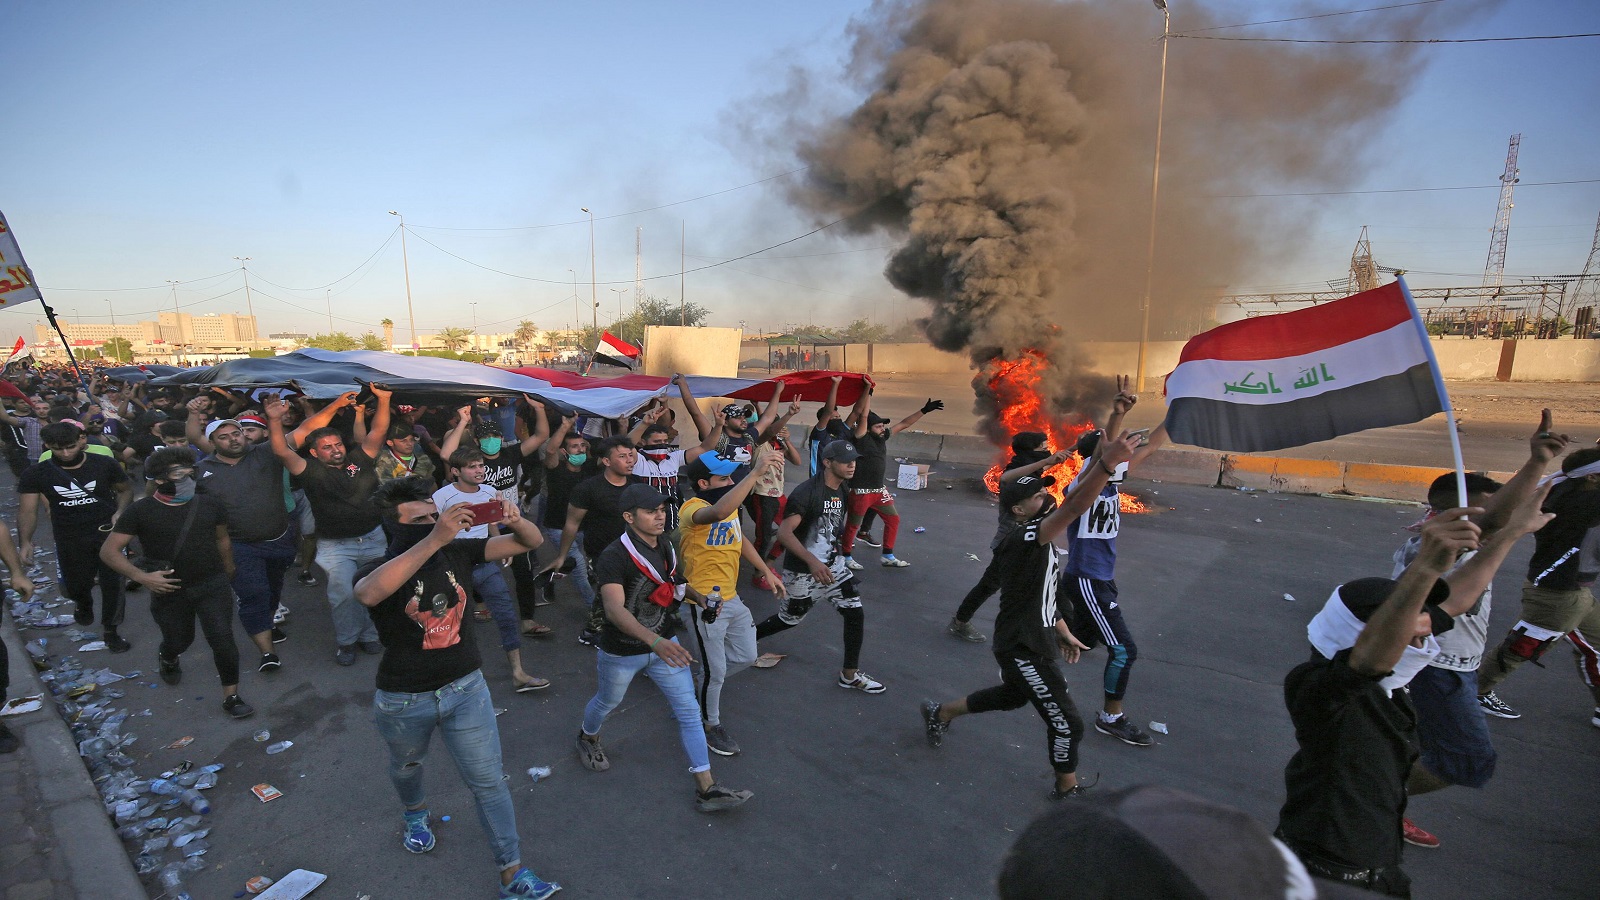 احتجاجات العراق:عندما تصبح القضية المطلبية..دعوة لاصلاح النظام